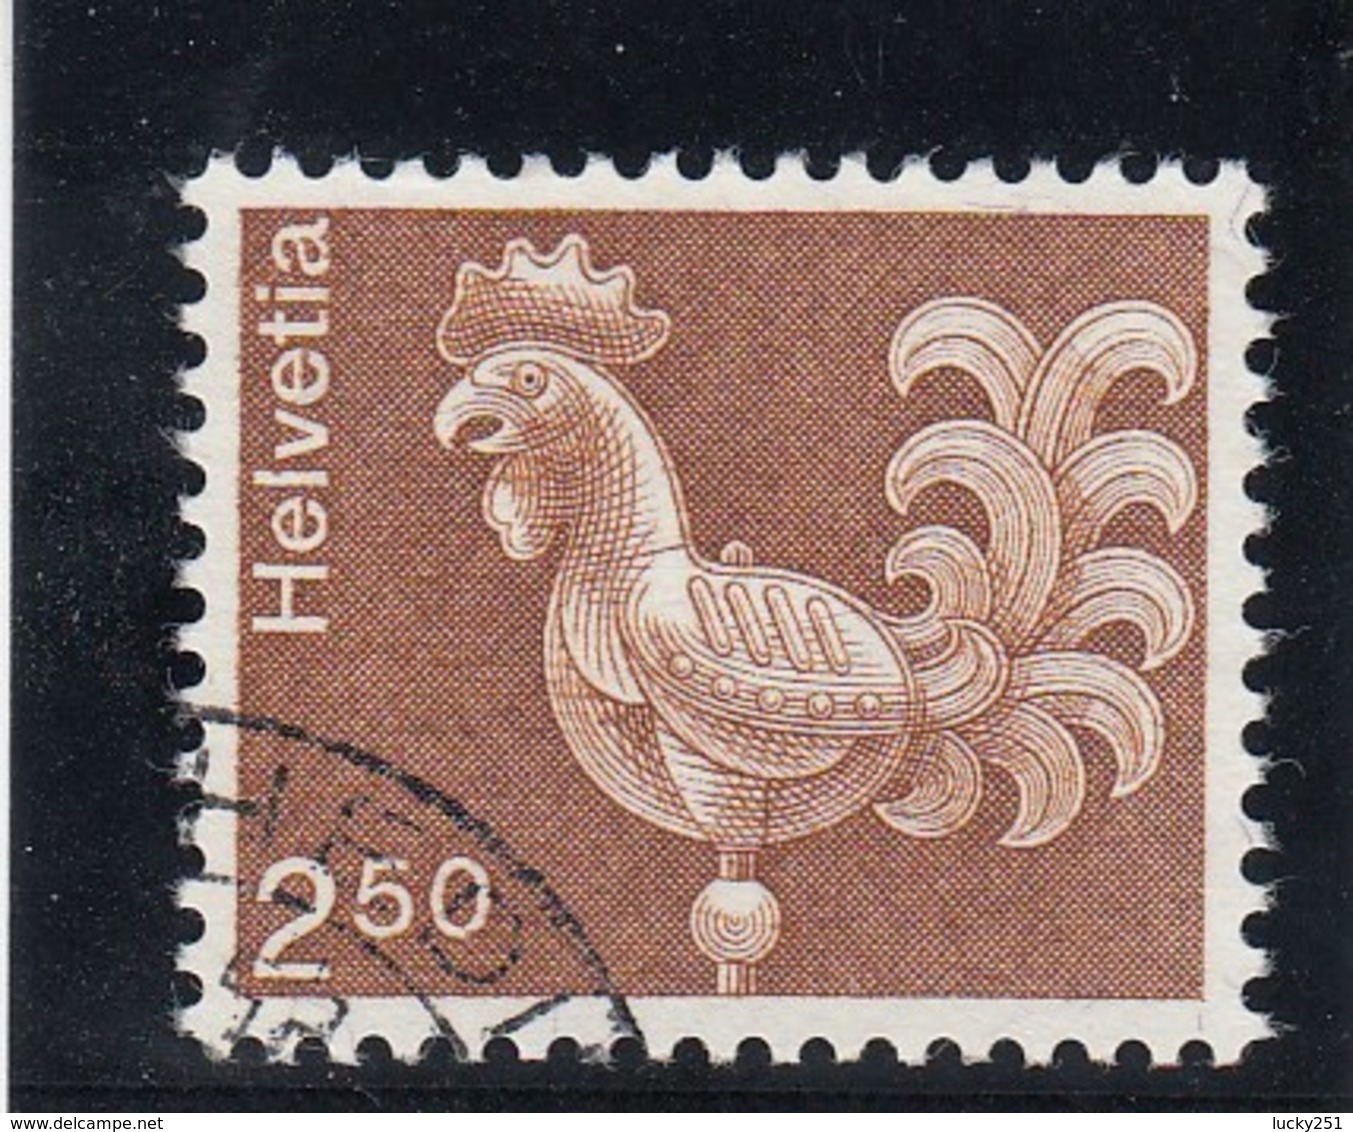 Suisse - 1975 - Oblit. - N° YT 991 - Coq - Usati